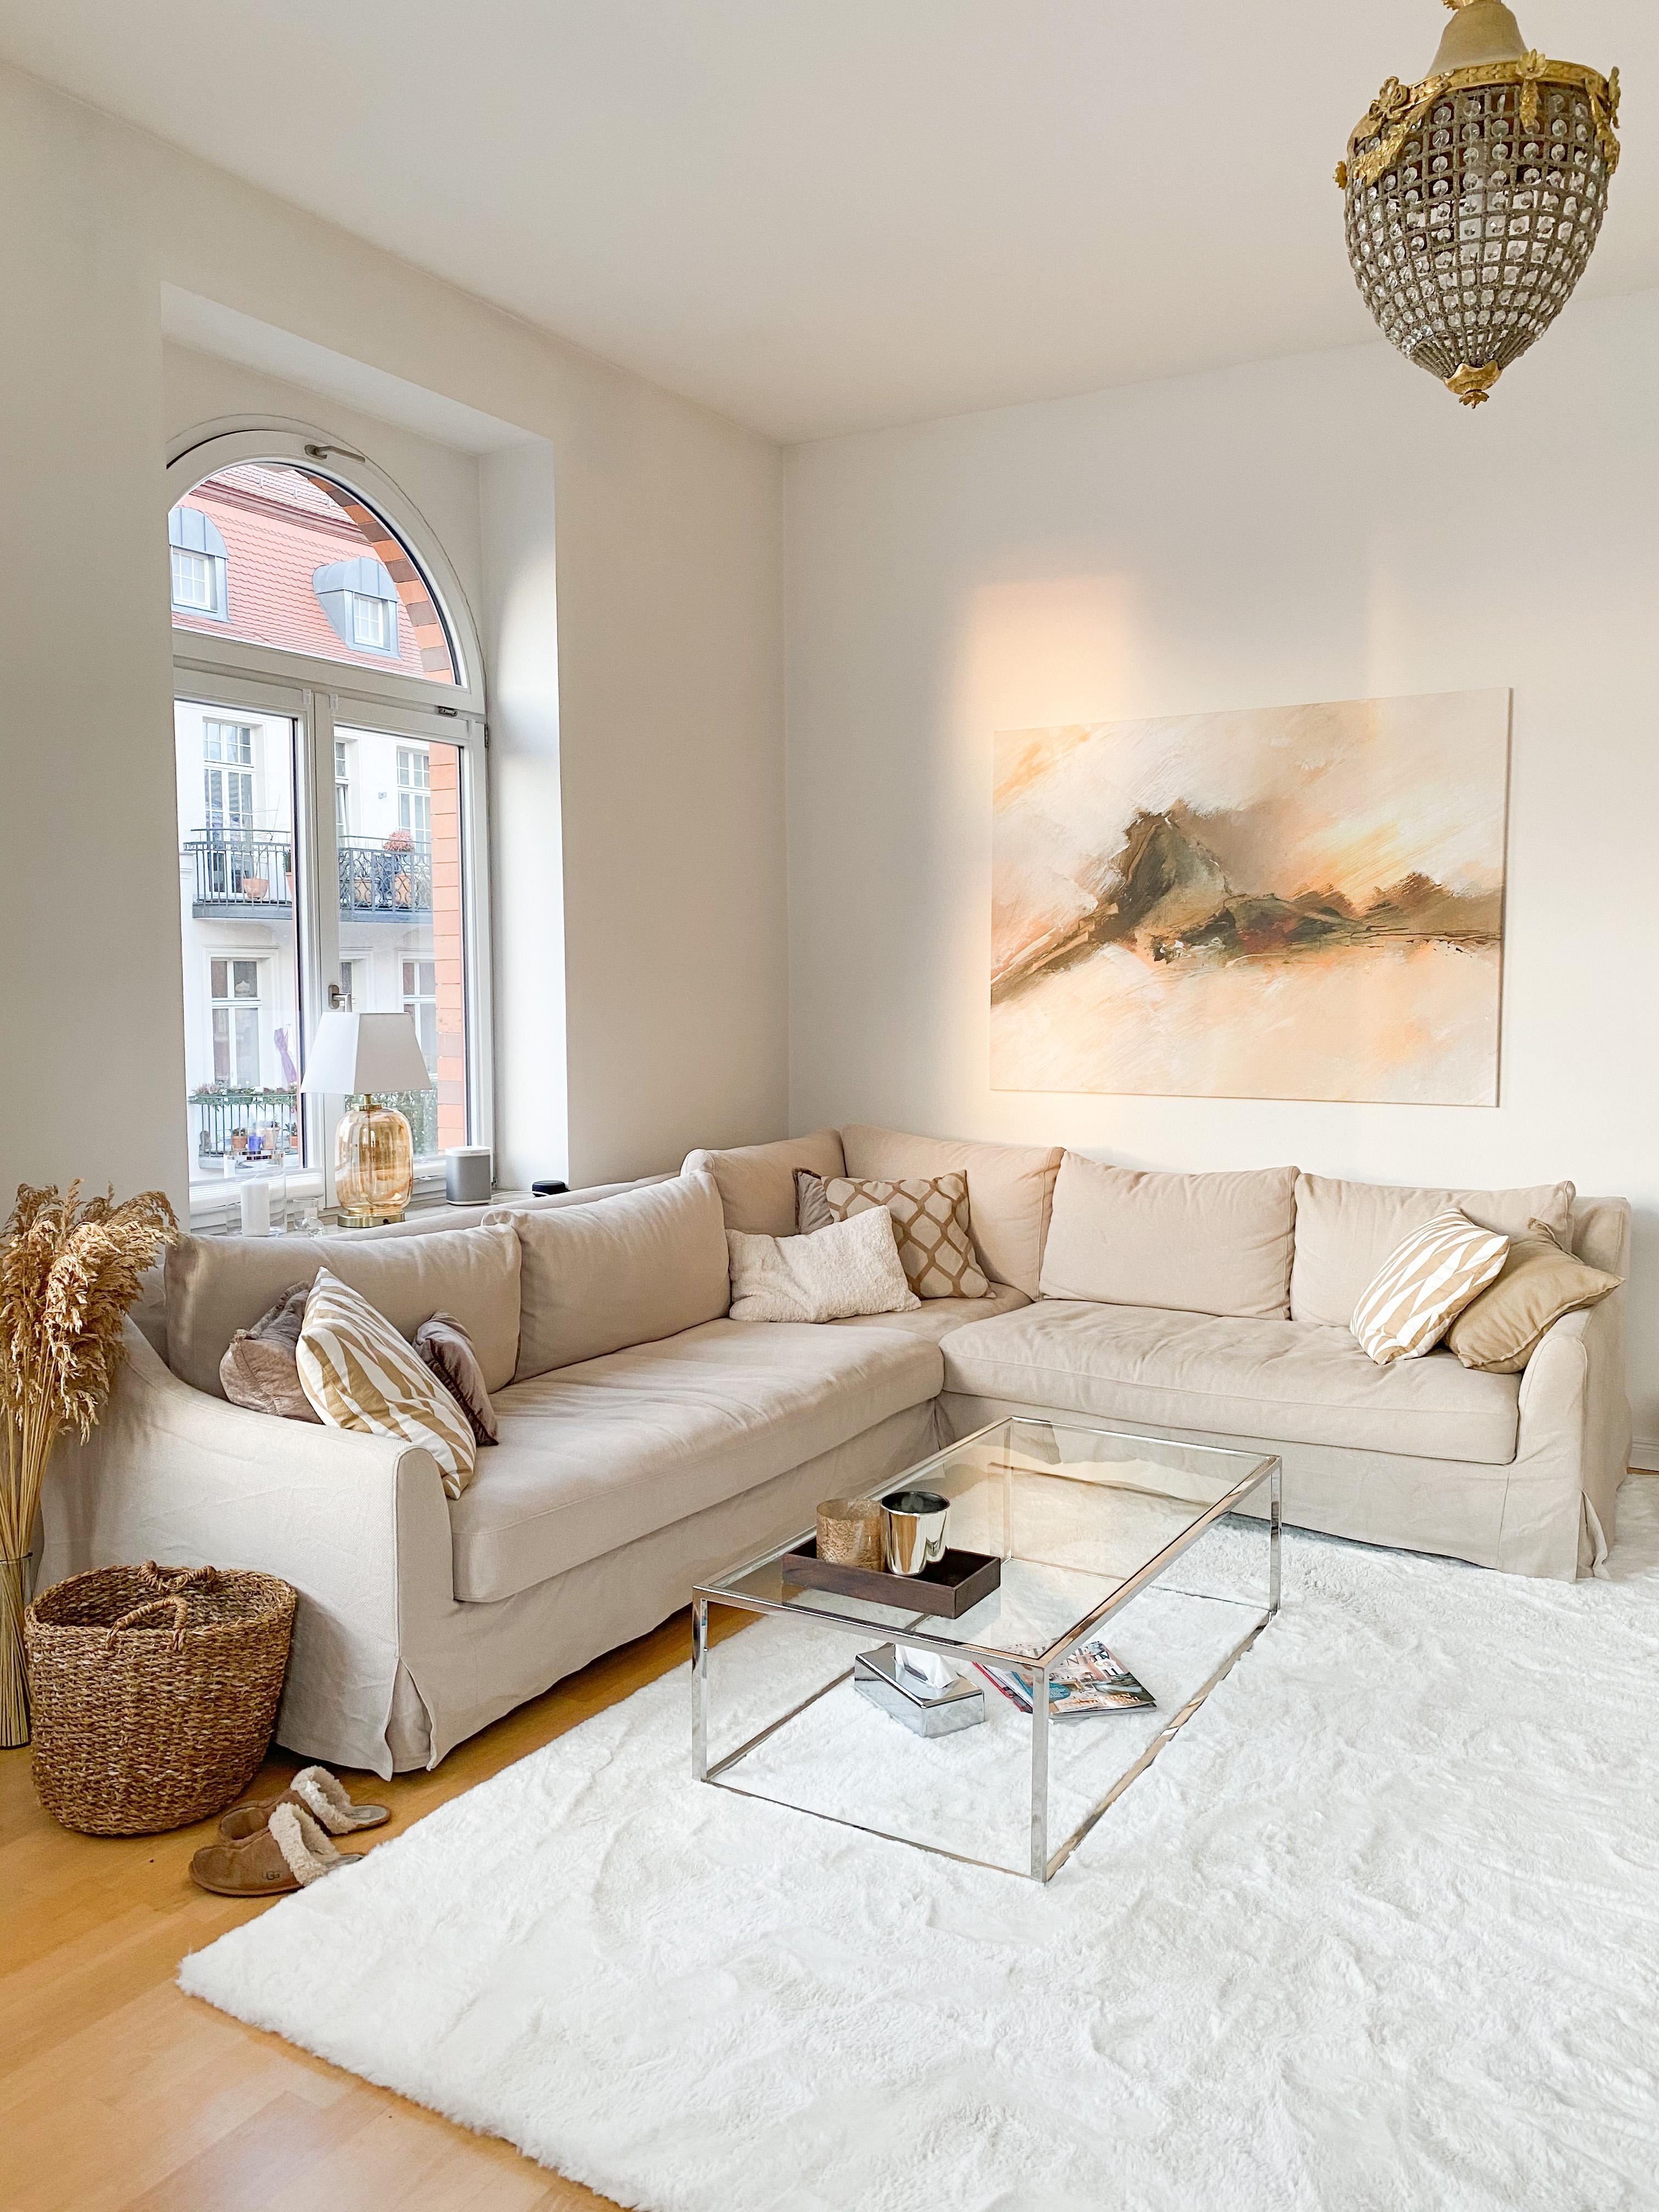 Jetzt schon bereit für das Wochenende. #couch #wohnzimmer #livingroom #beige #sofa #couchtisch